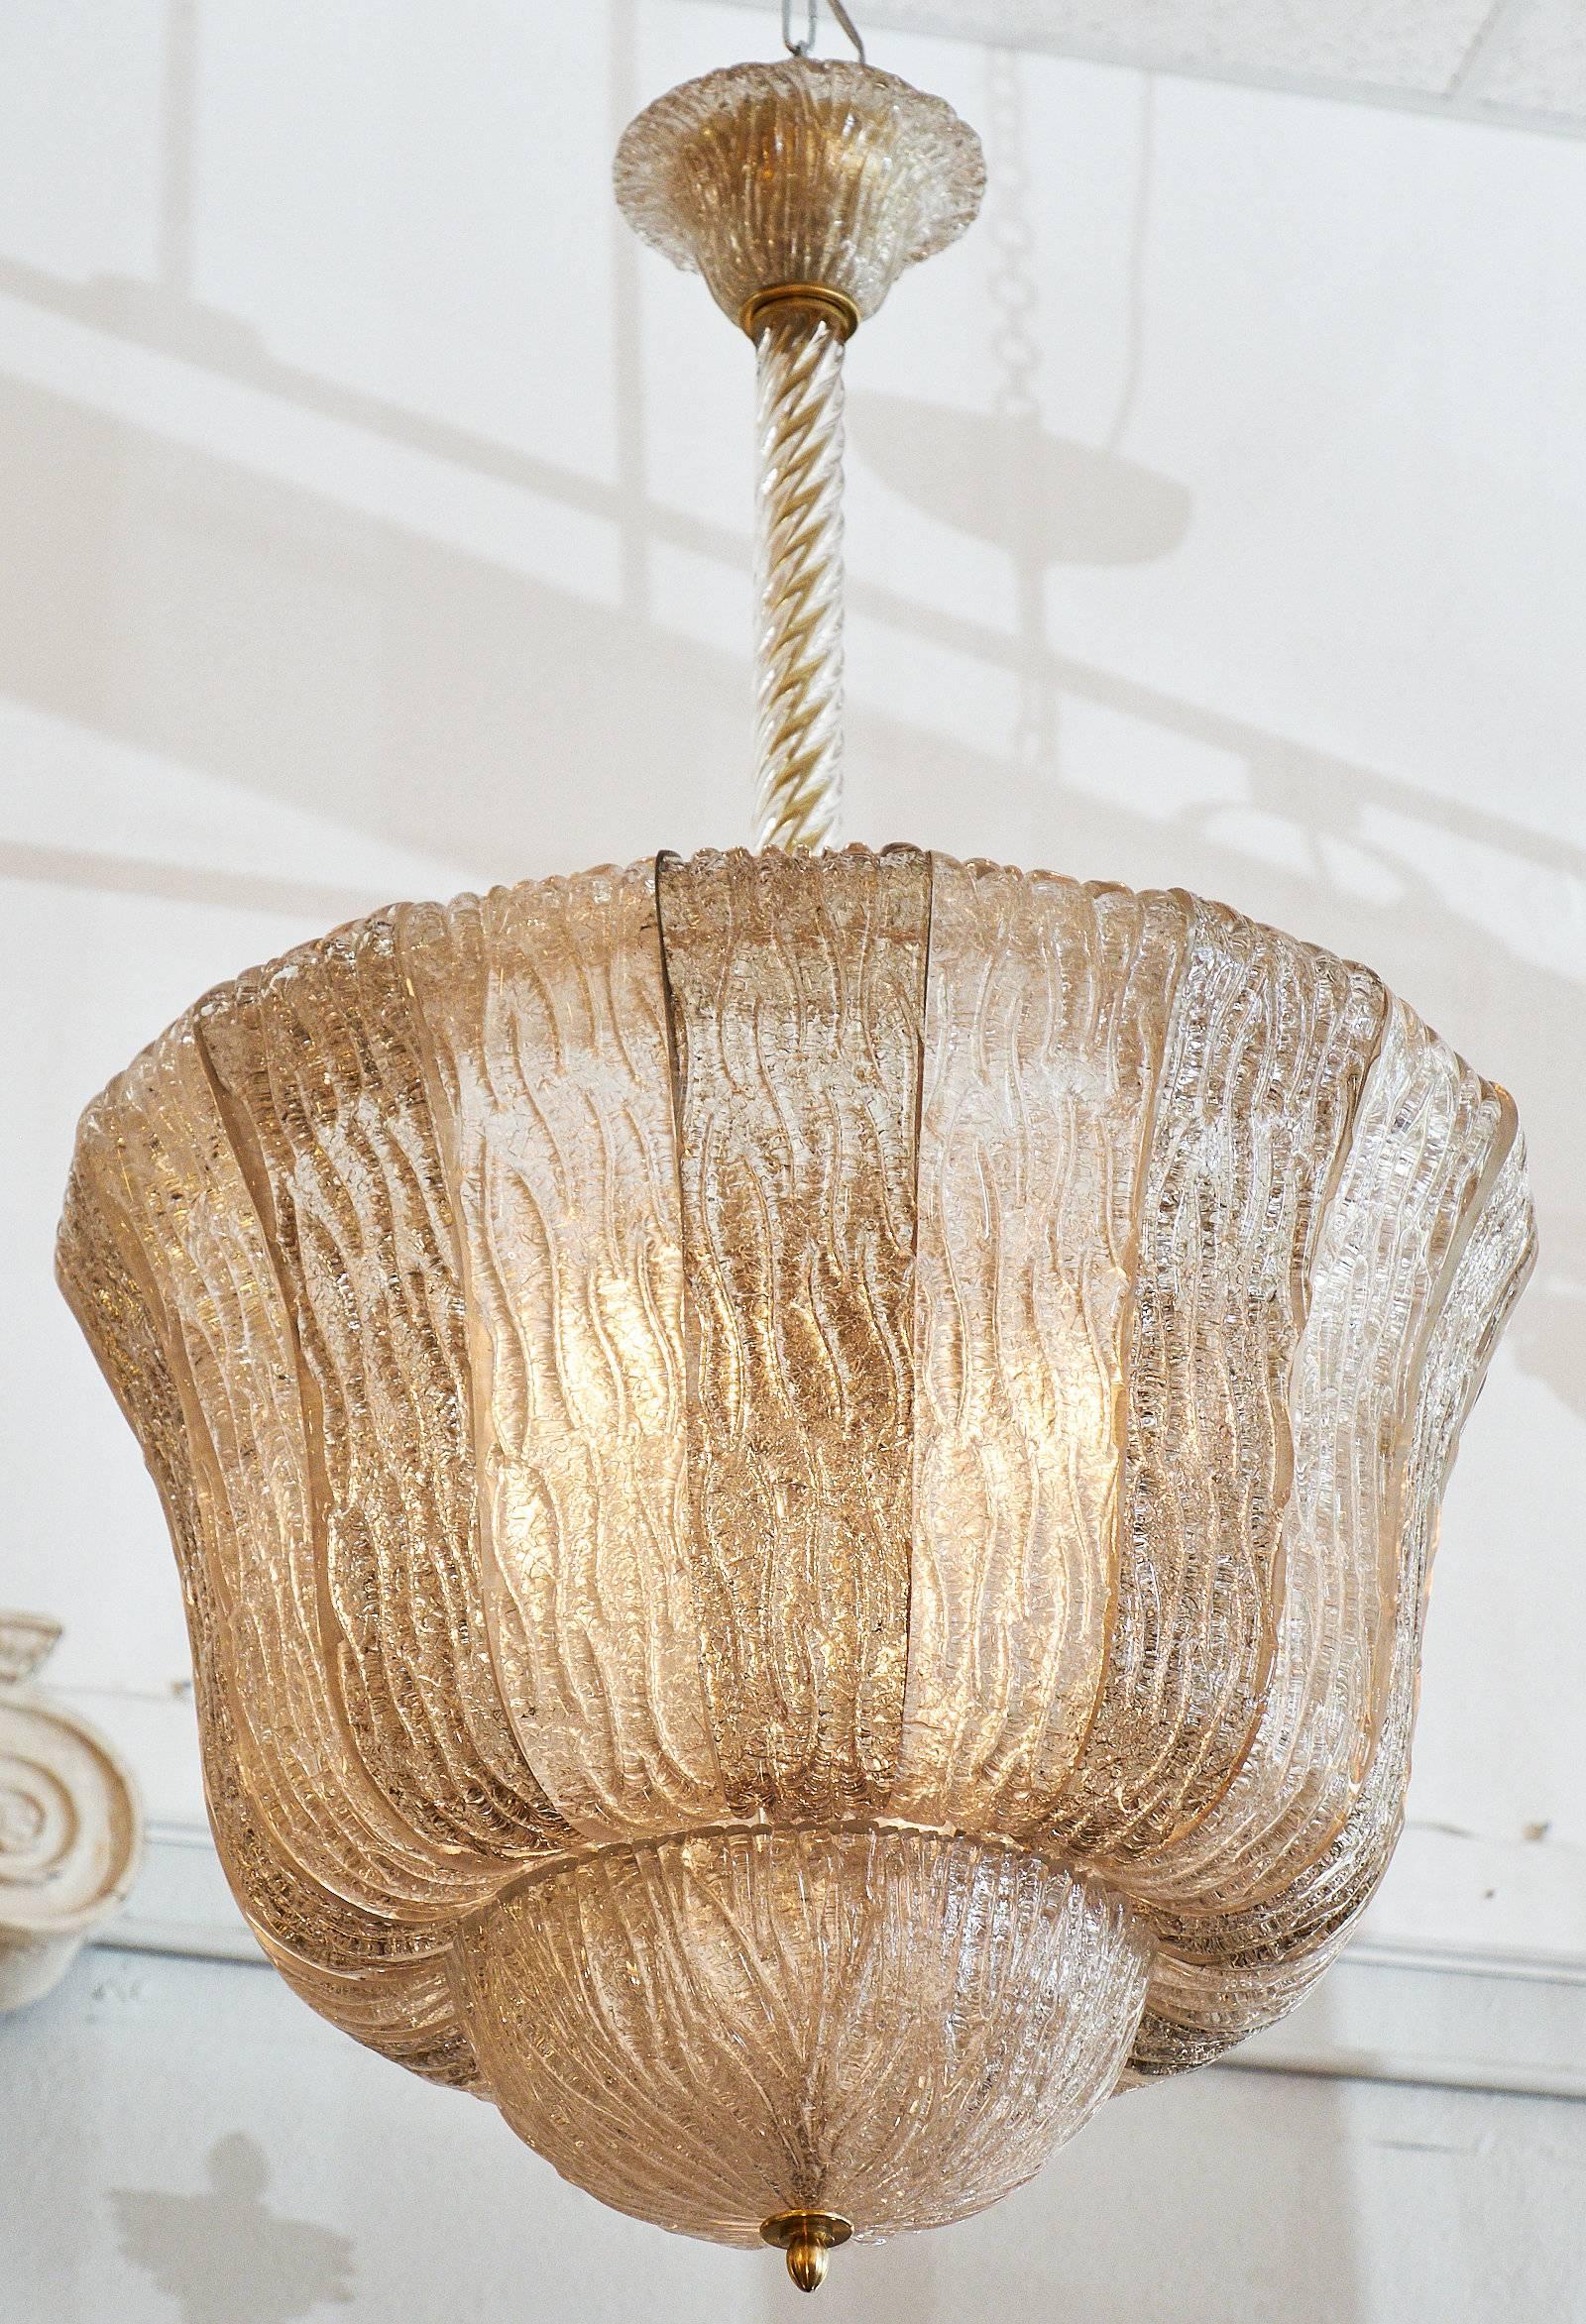 Une superbe lanterne bicolore en verre de Murano estampé. Le verre alterne entre un ton clair et un ton fumé. La belle forme de cloche des luminaires est suspendue à une tige en laiton dissimulée à l'intérieur d'un tube en verre torsadé. Cette pièce